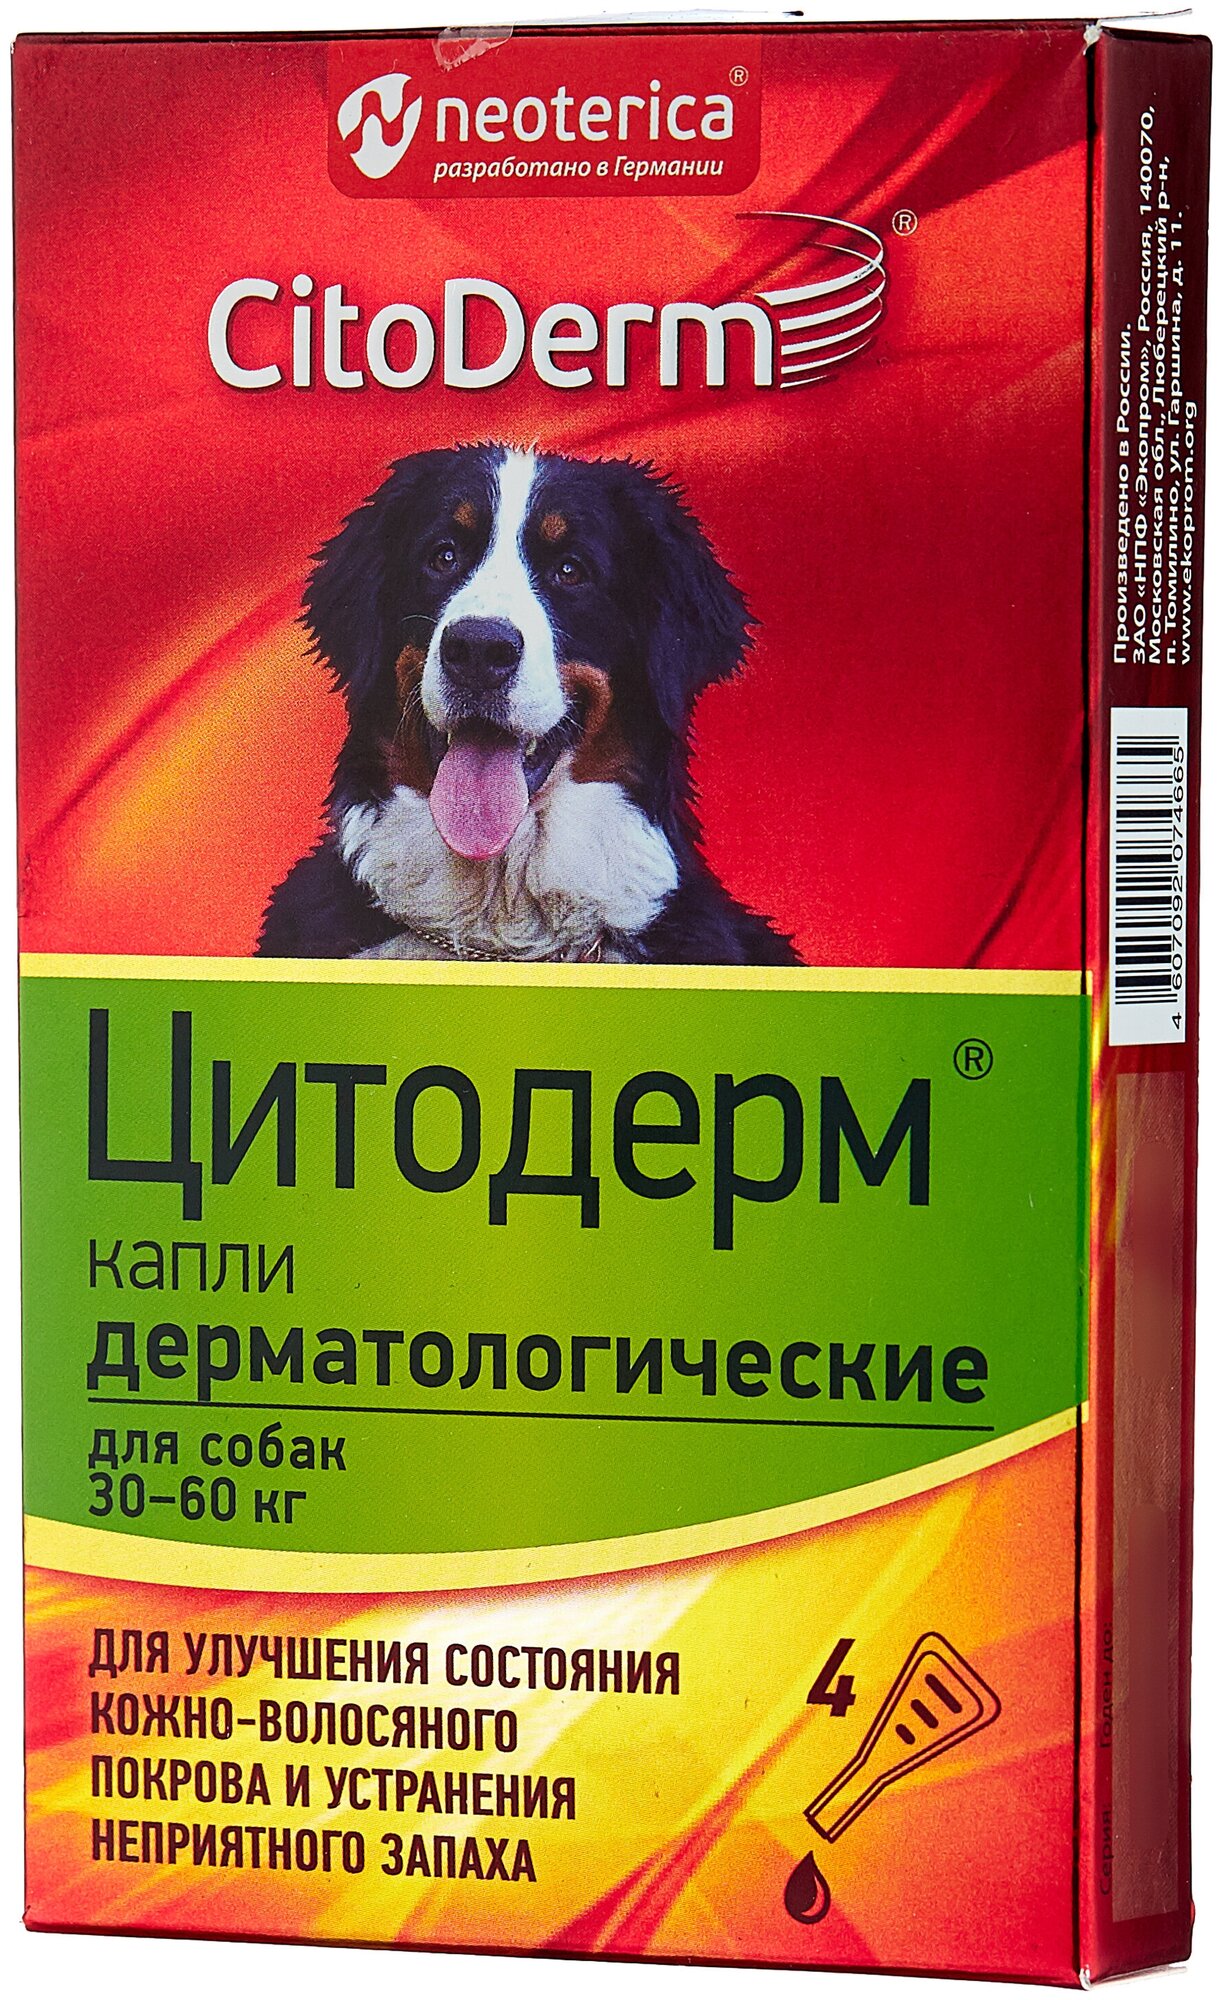 Капли CitoDerm Дерматологические для собак 30-60 кг, 6 мл, 2 г, 4шт. в уп.